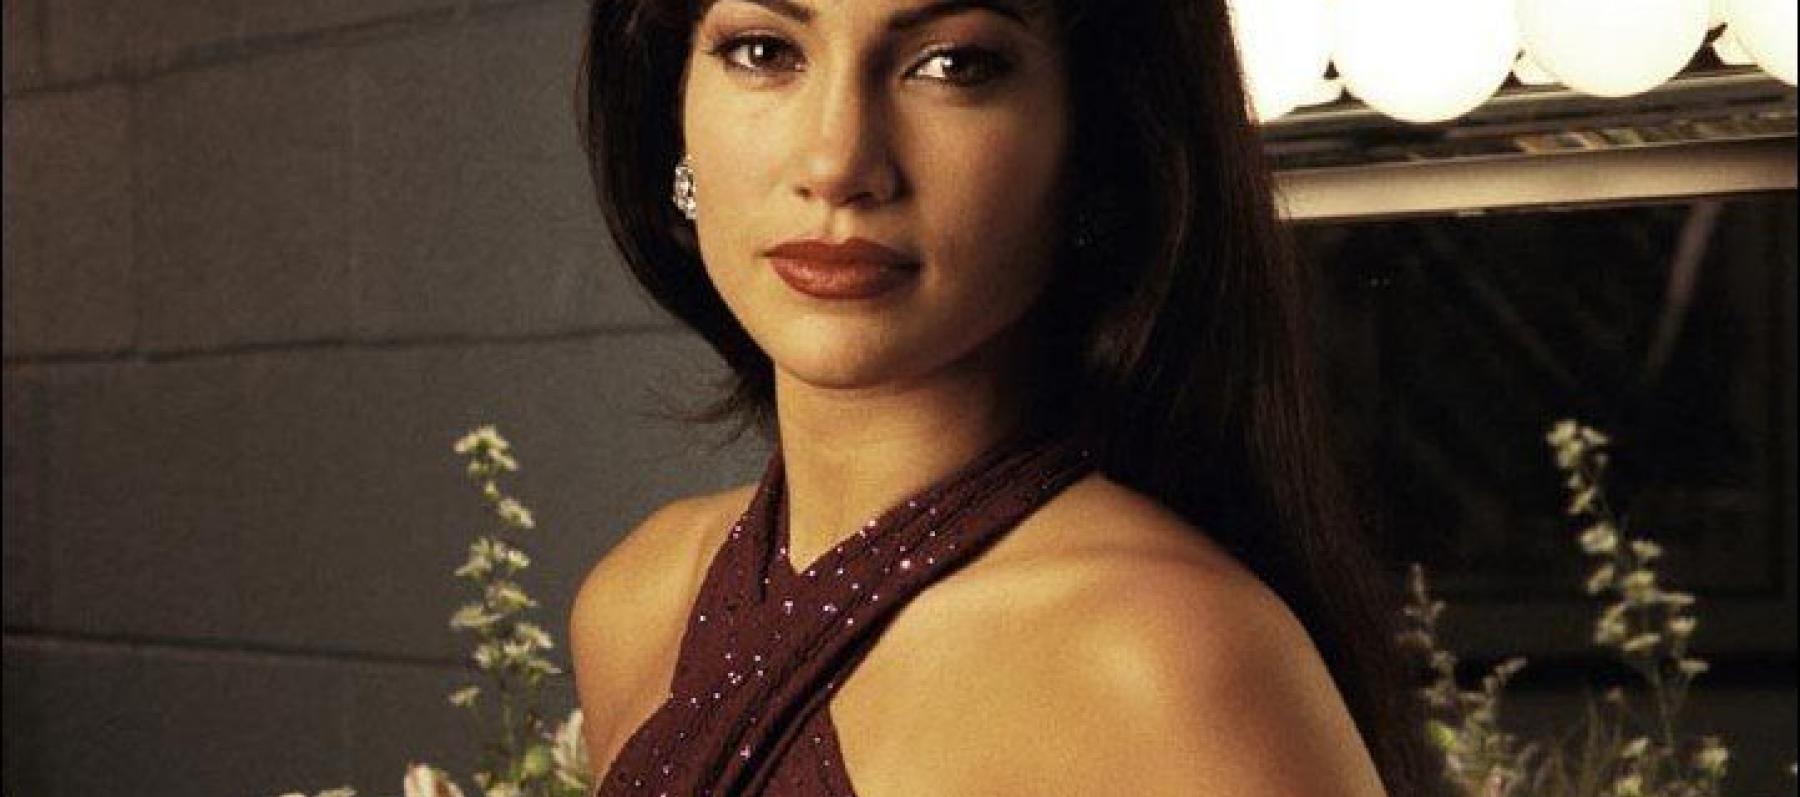 جنيفر لوبيز بدور سيلينا في فيلم Selena في العام 1997